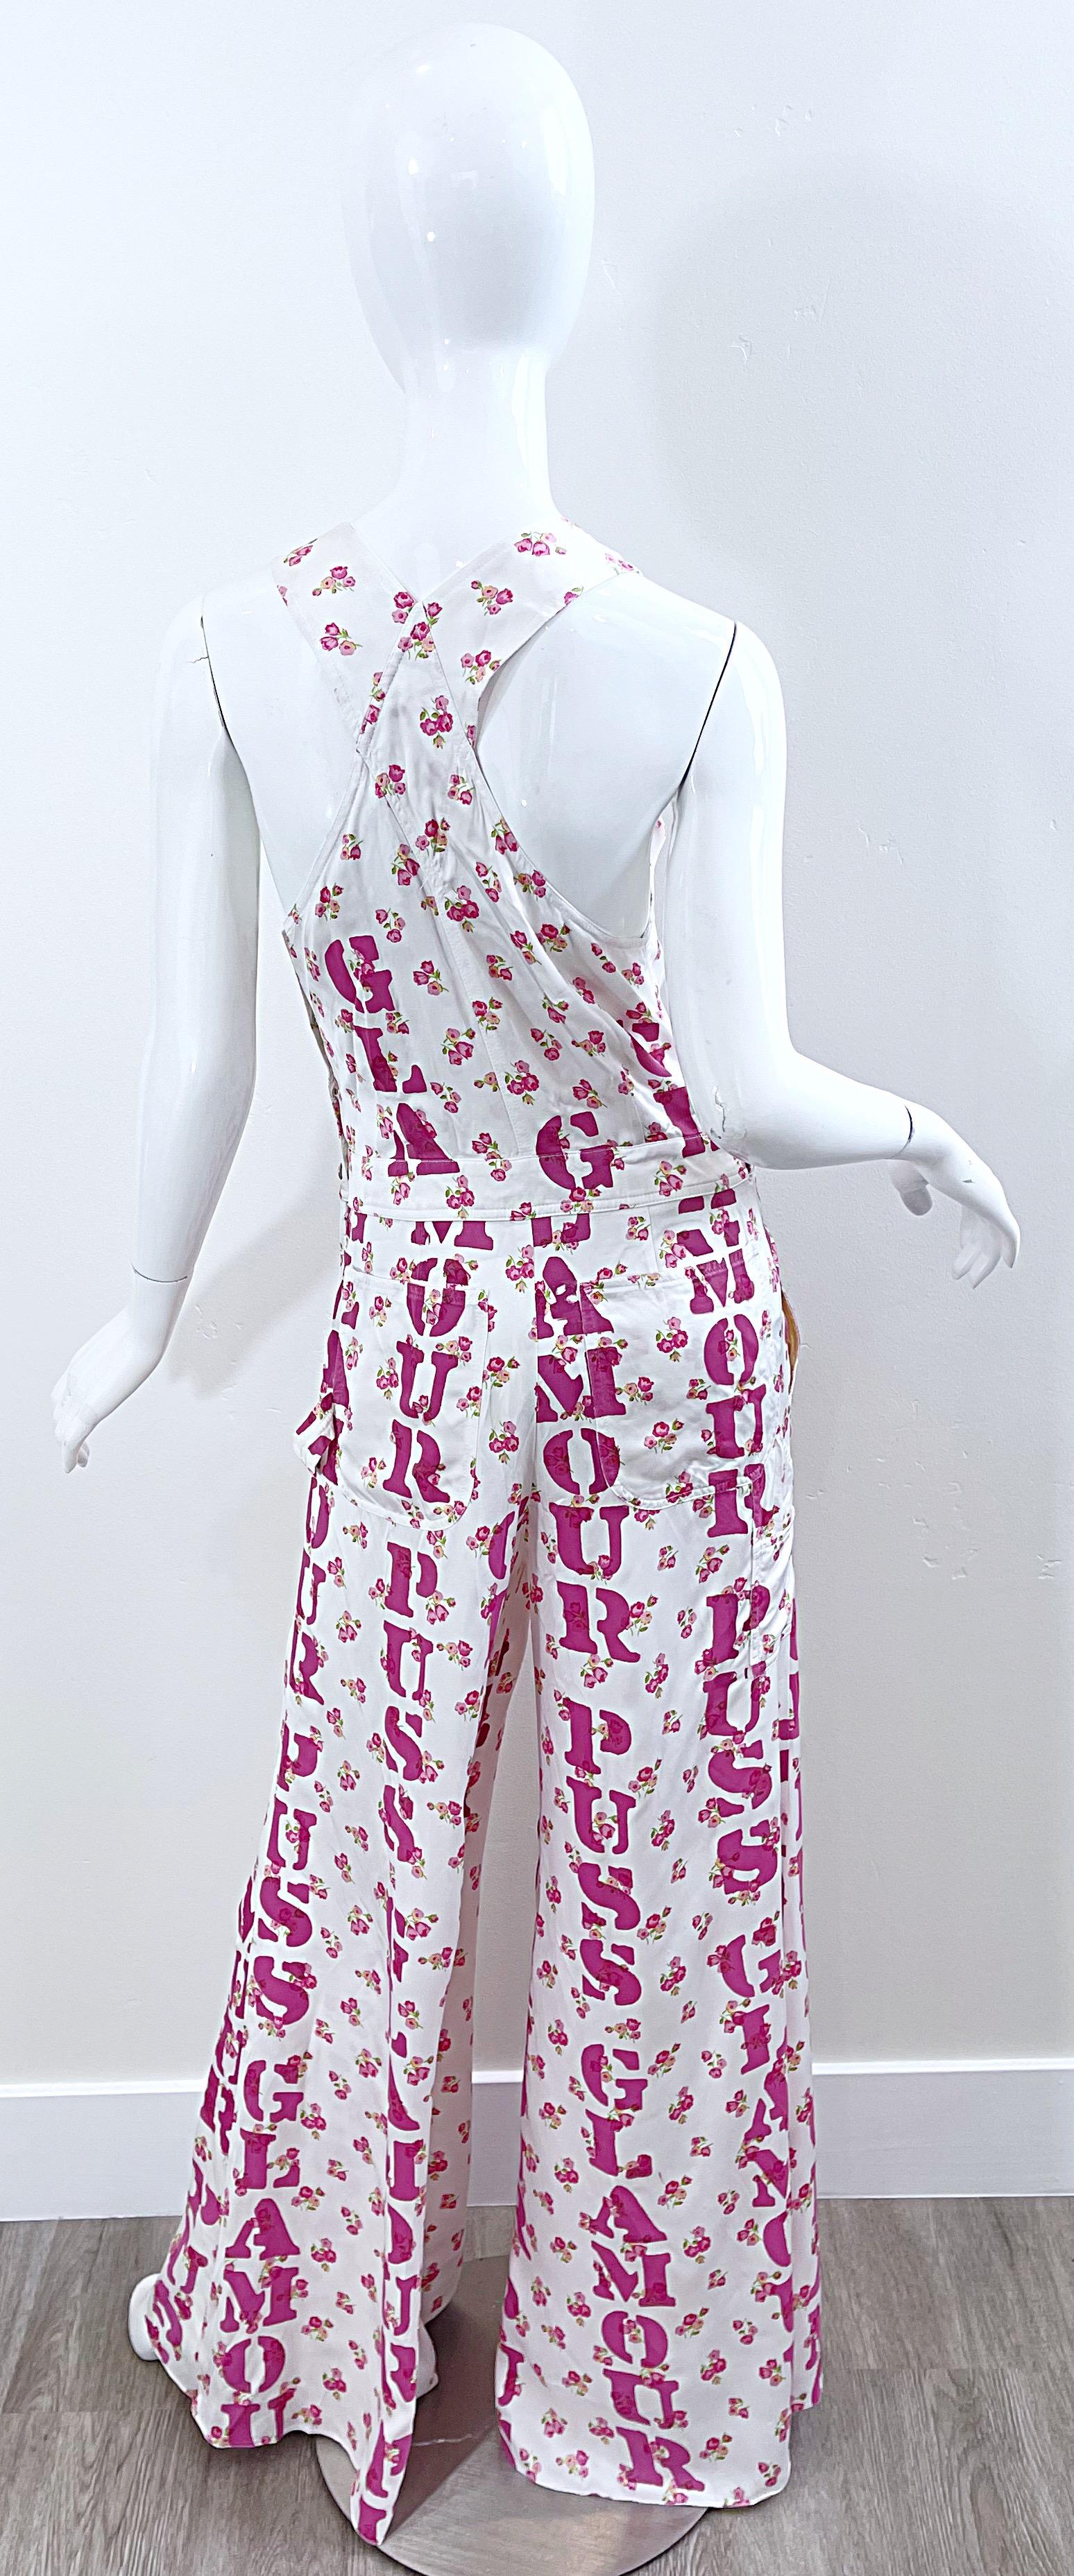 Moschino Couture Resort 2020 Größe 8 Glamour Puss Overalls mit Blumendruck in Übergröße 1